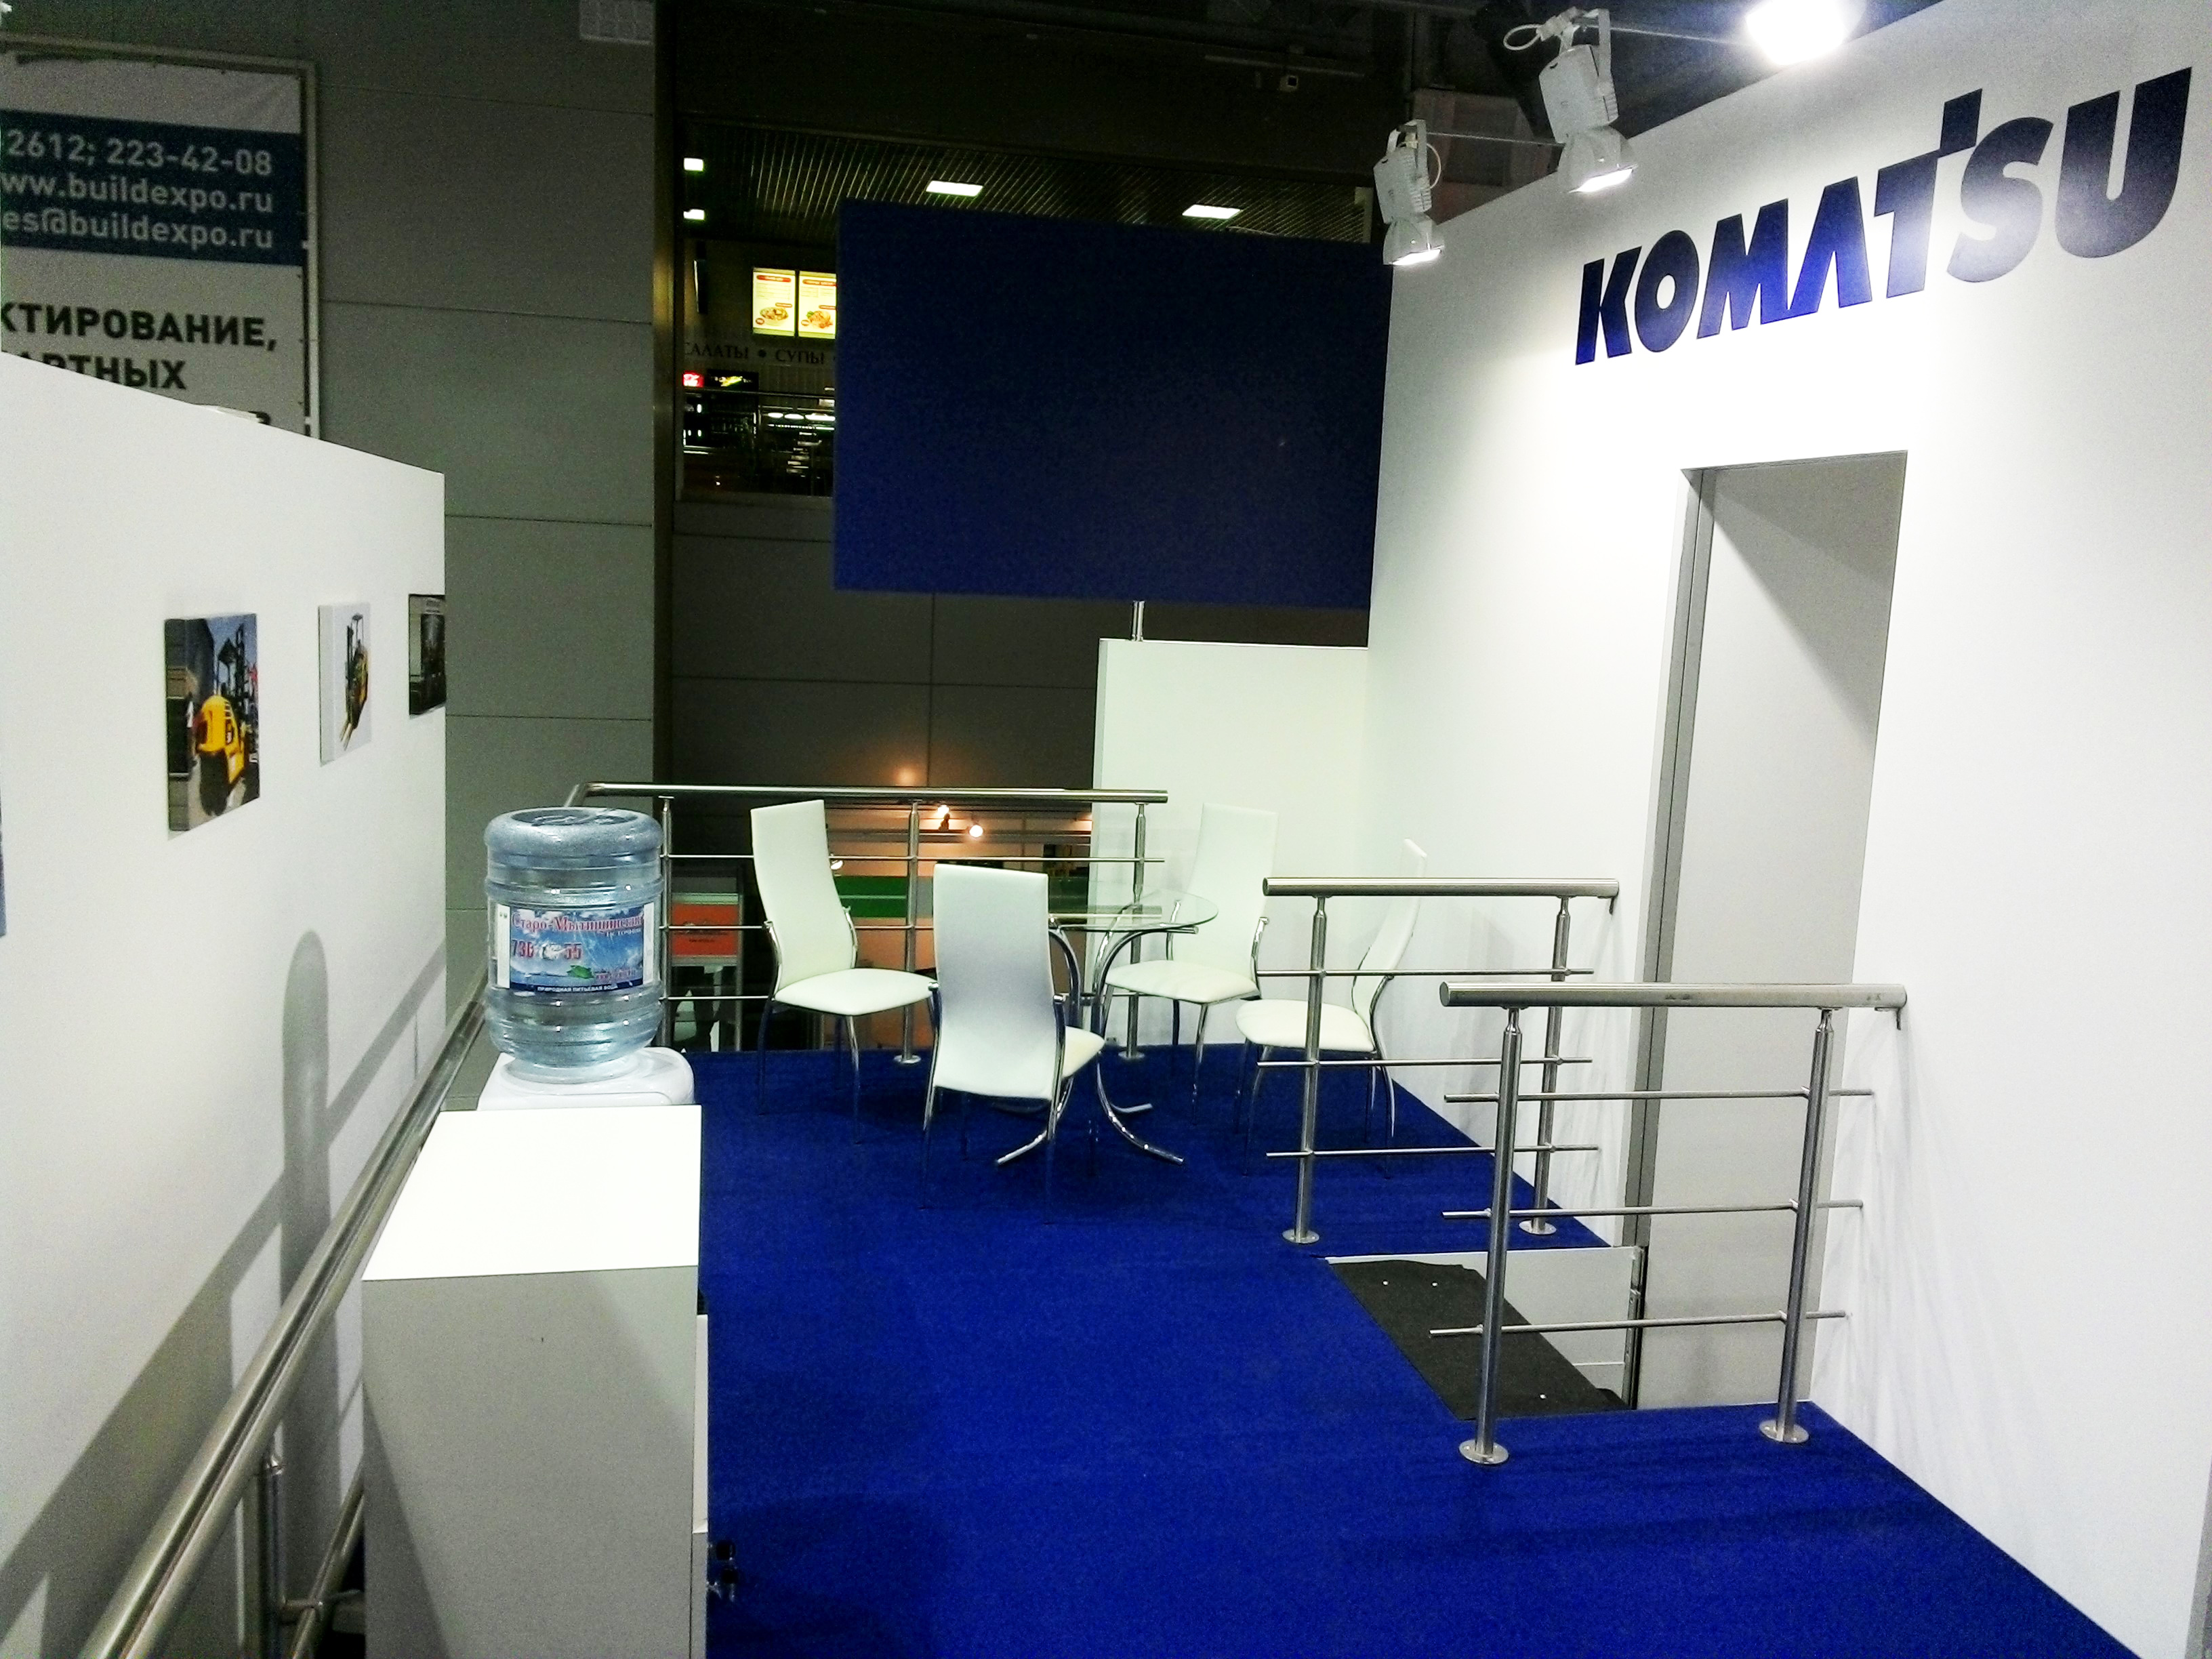 Komatsu — выставка CeMAT,2013